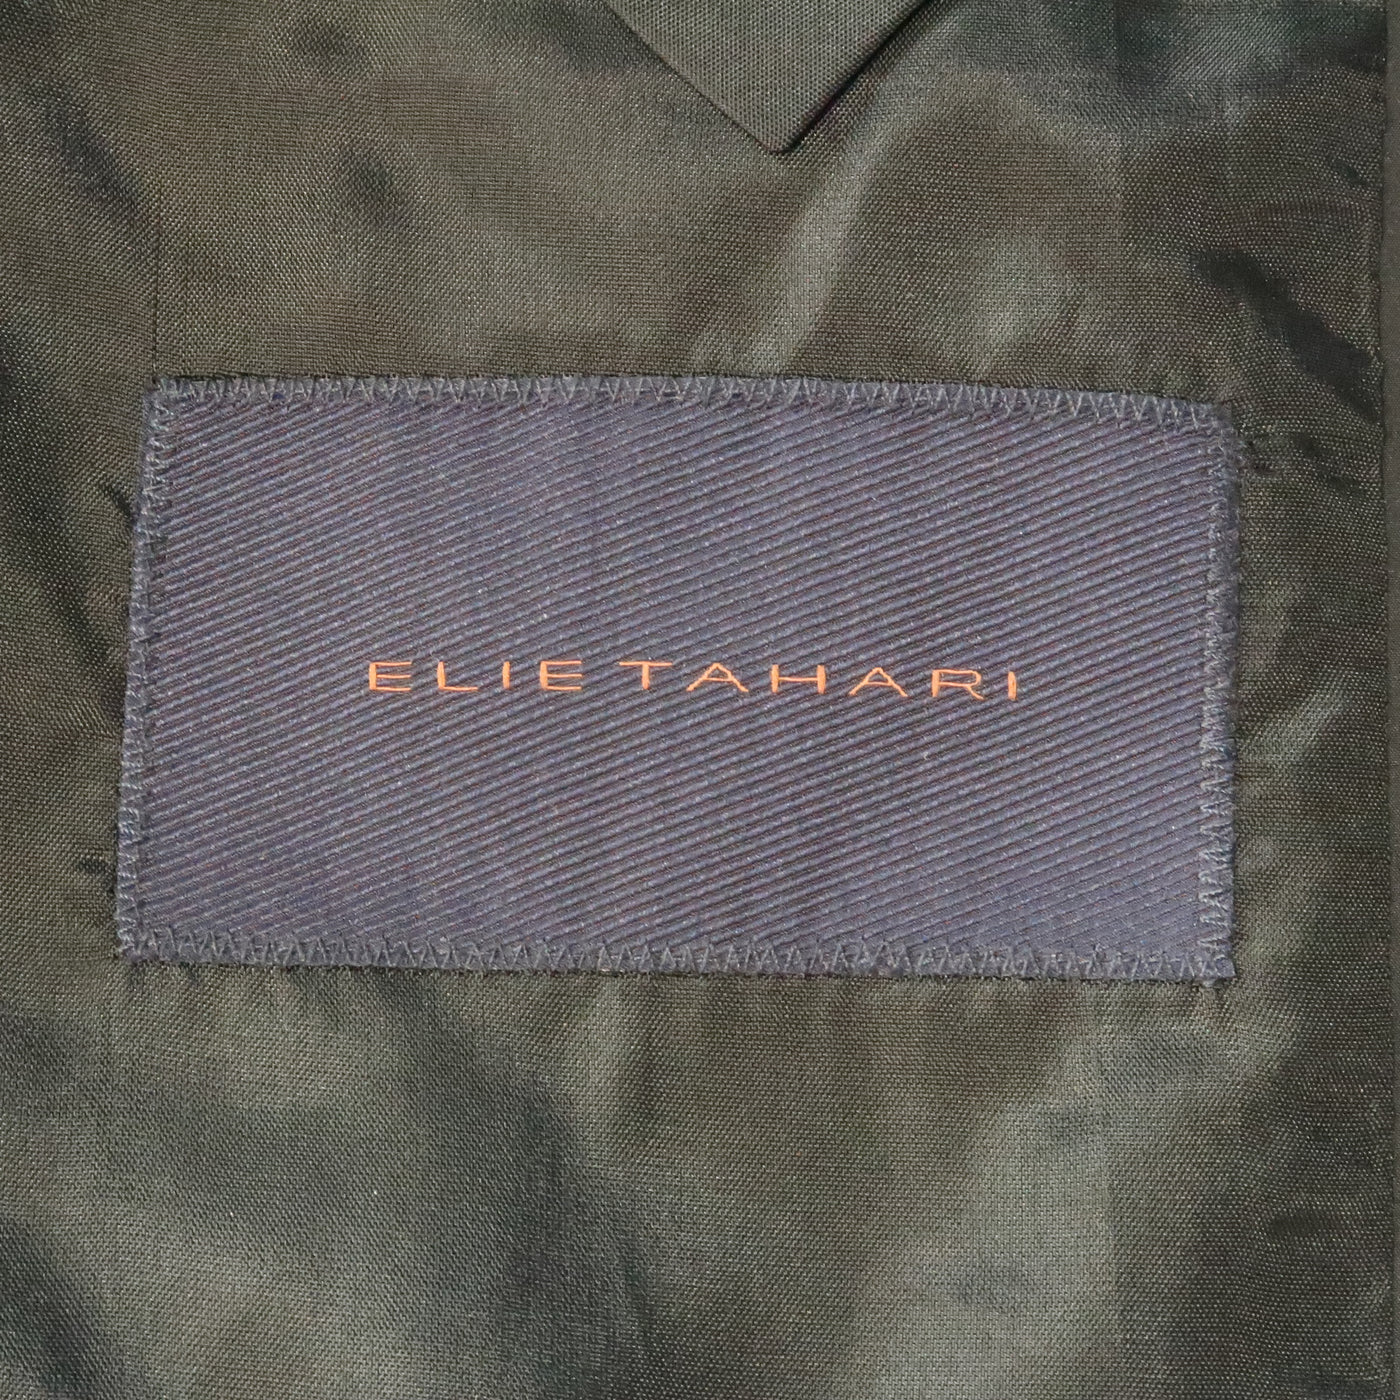 ELIE TAHARI 44 Black Polyester Jacket